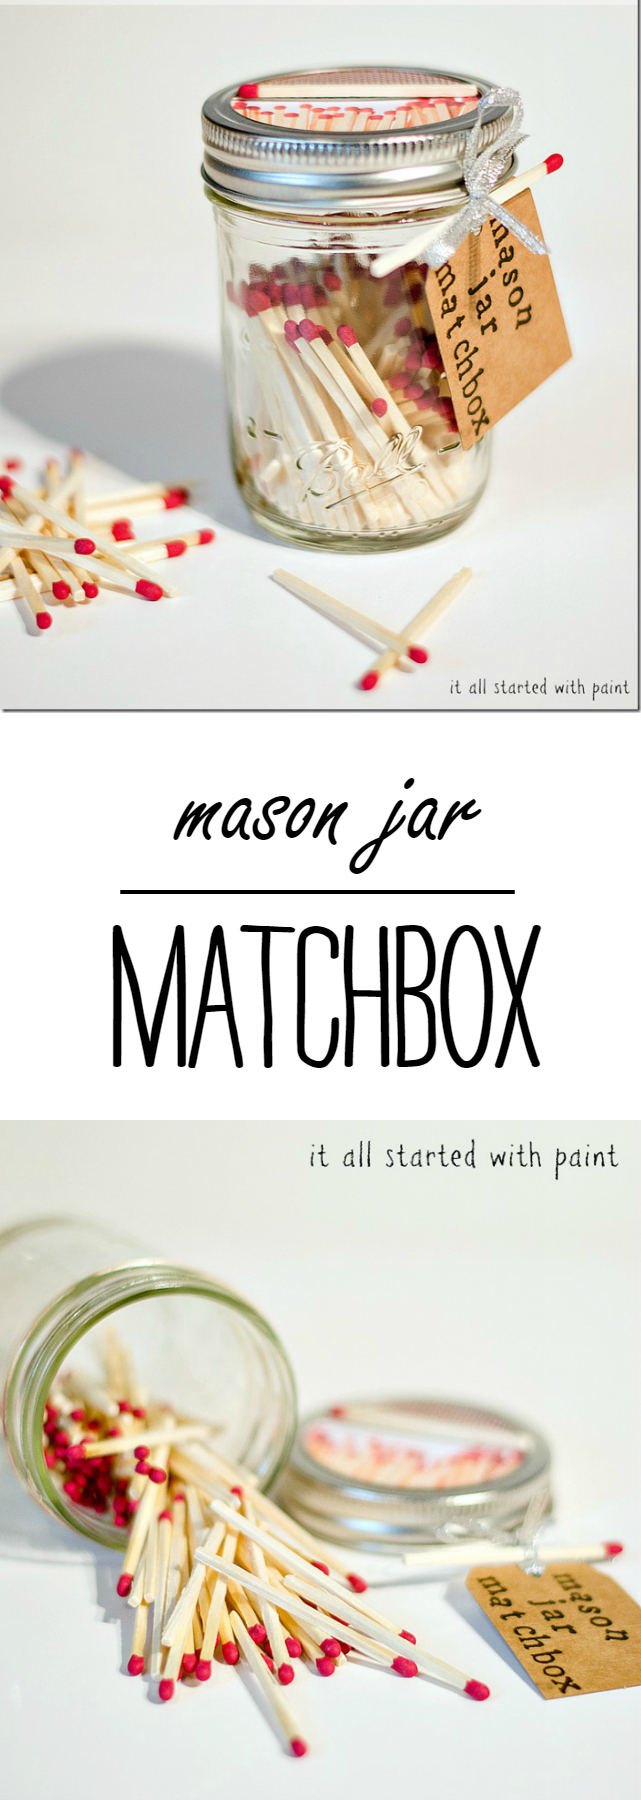 Mason Jar Matchbox Gift Idea for Father's Day